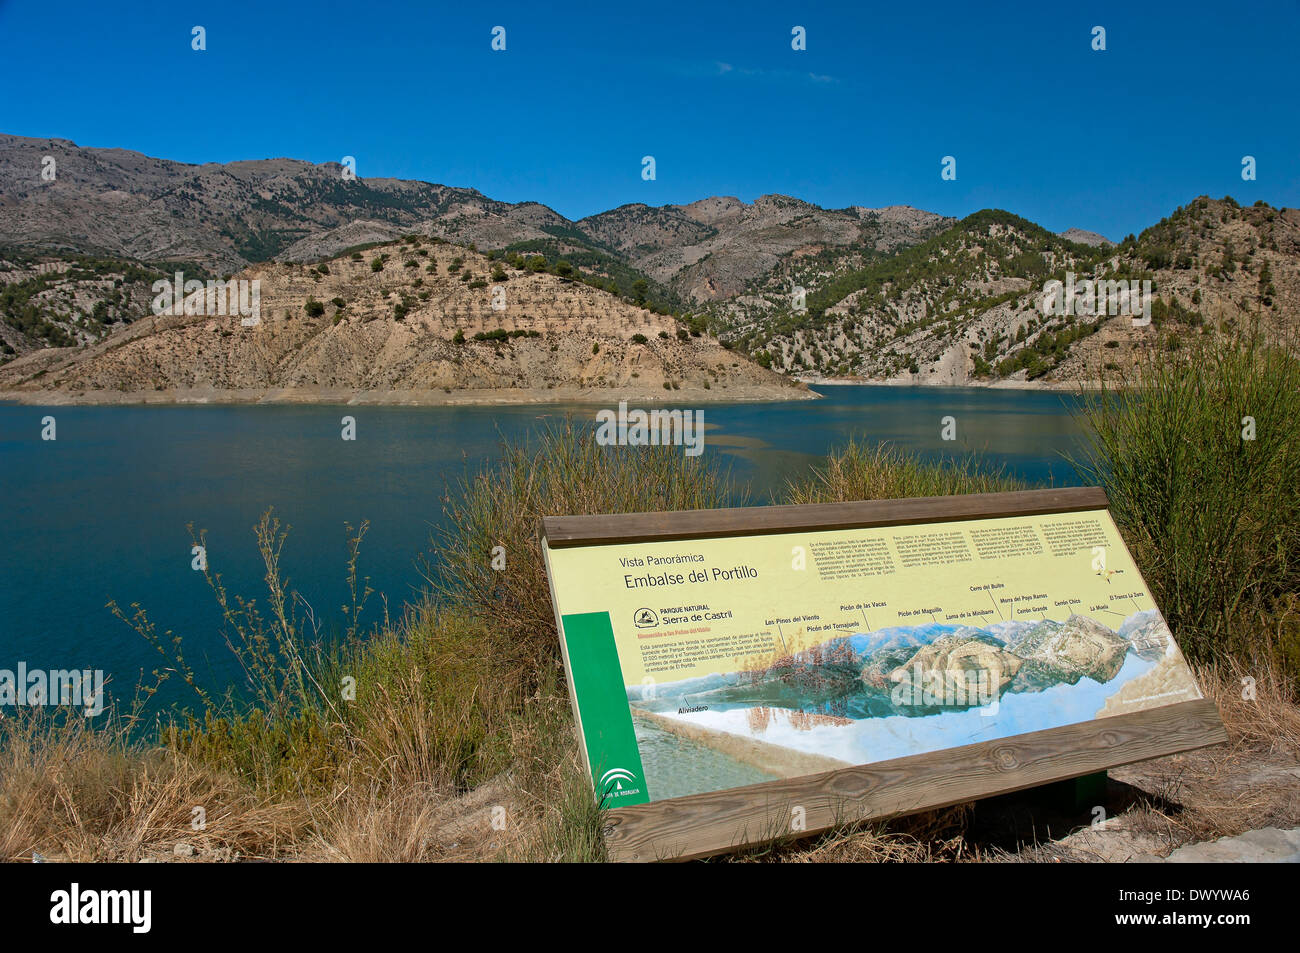 Portillo réservoir, Parc Naturel de la Sierra de Castril, Granada province, région d'Andalousie, Espagne, Europe Banque D'Images